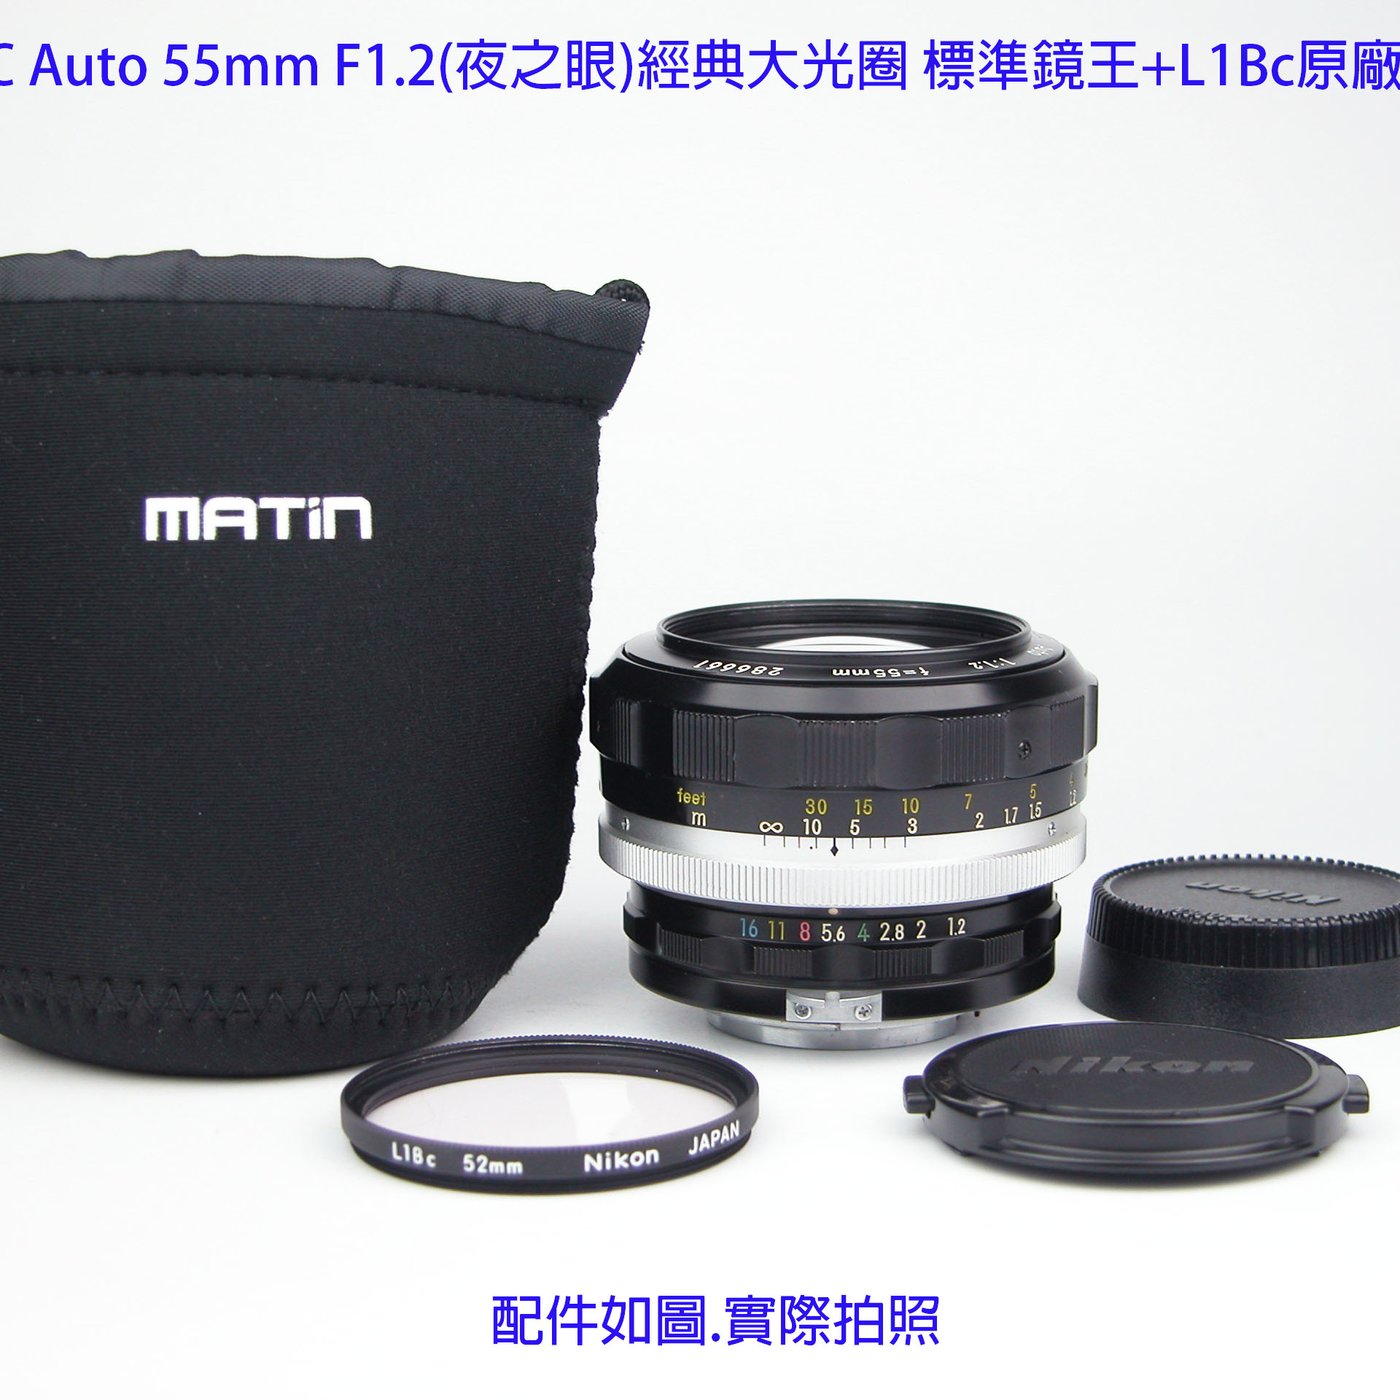 Nikon S.C Auto 55mm F1.2(夜之眼)經典大光圈標準鏡王+L1Bc原廠濾